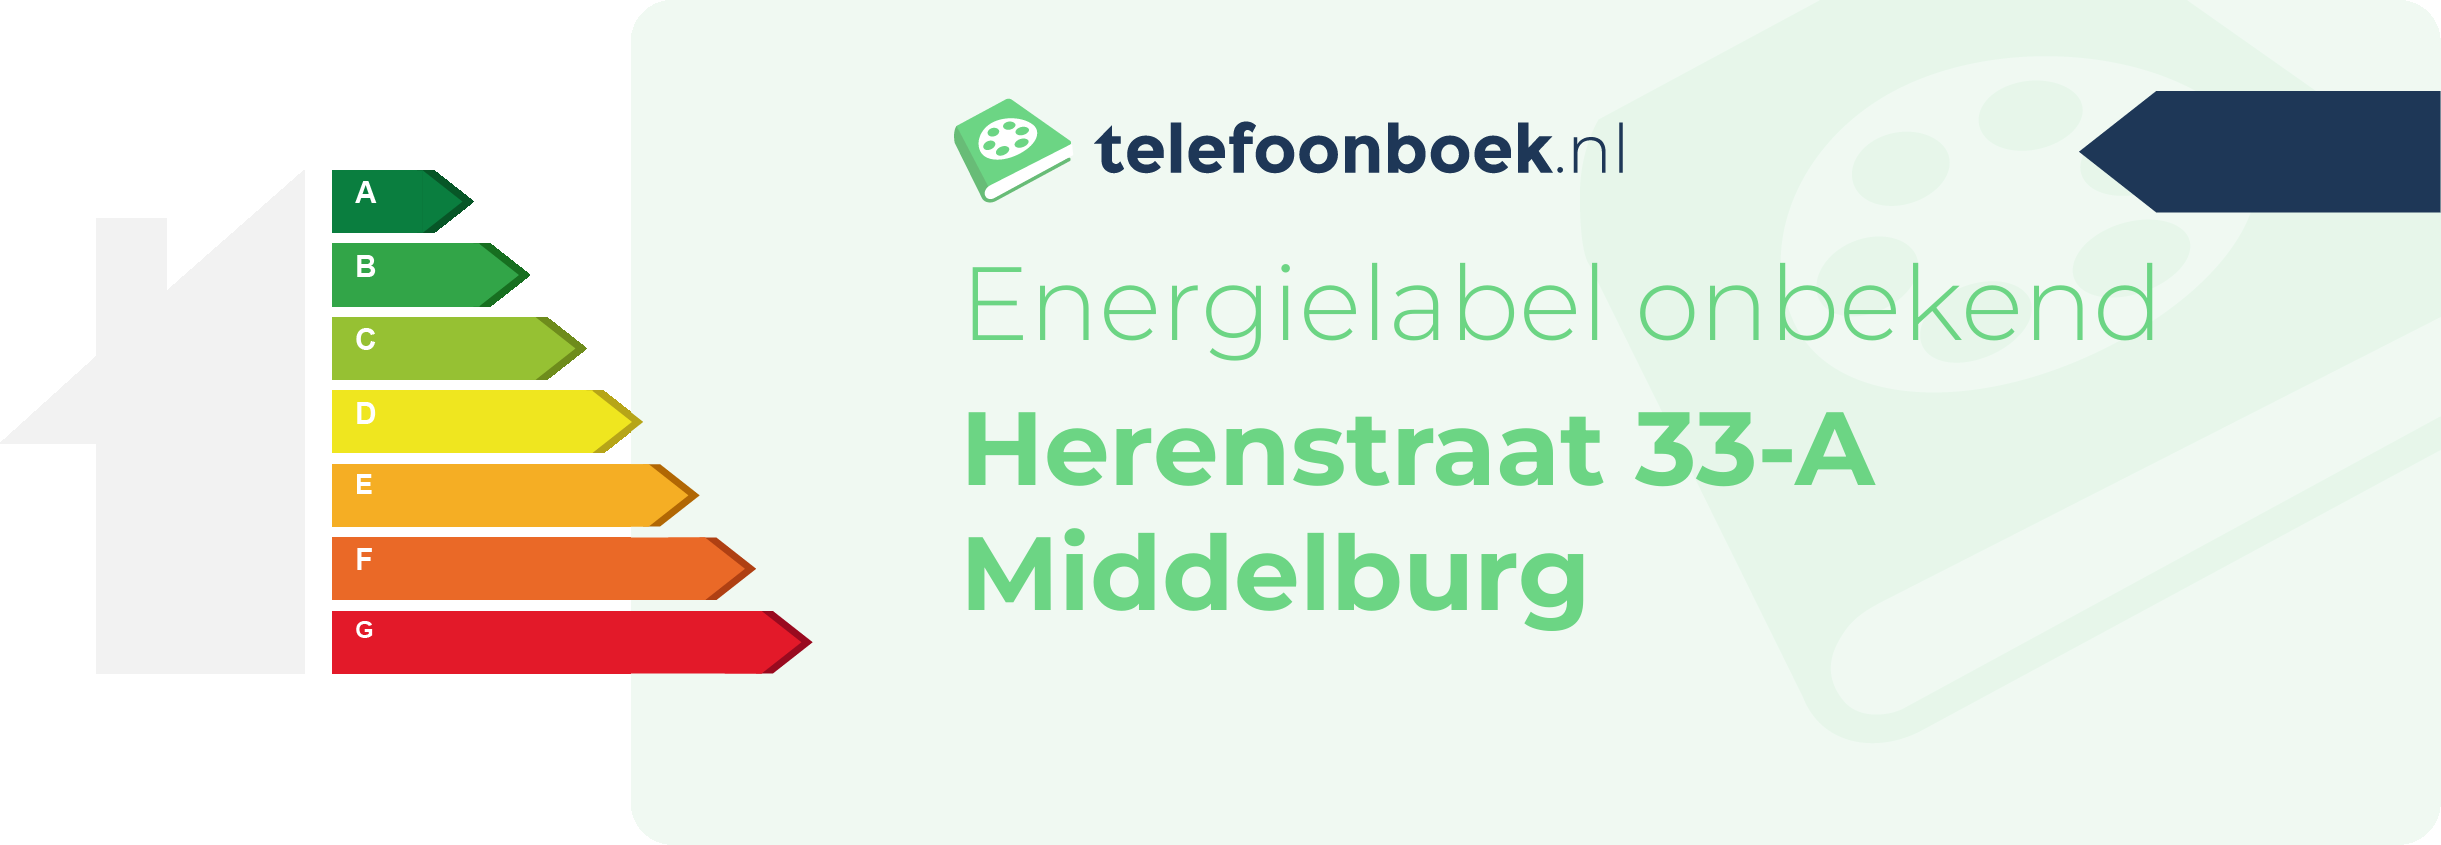 Energielabel Herenstraat 33-A Middelburg